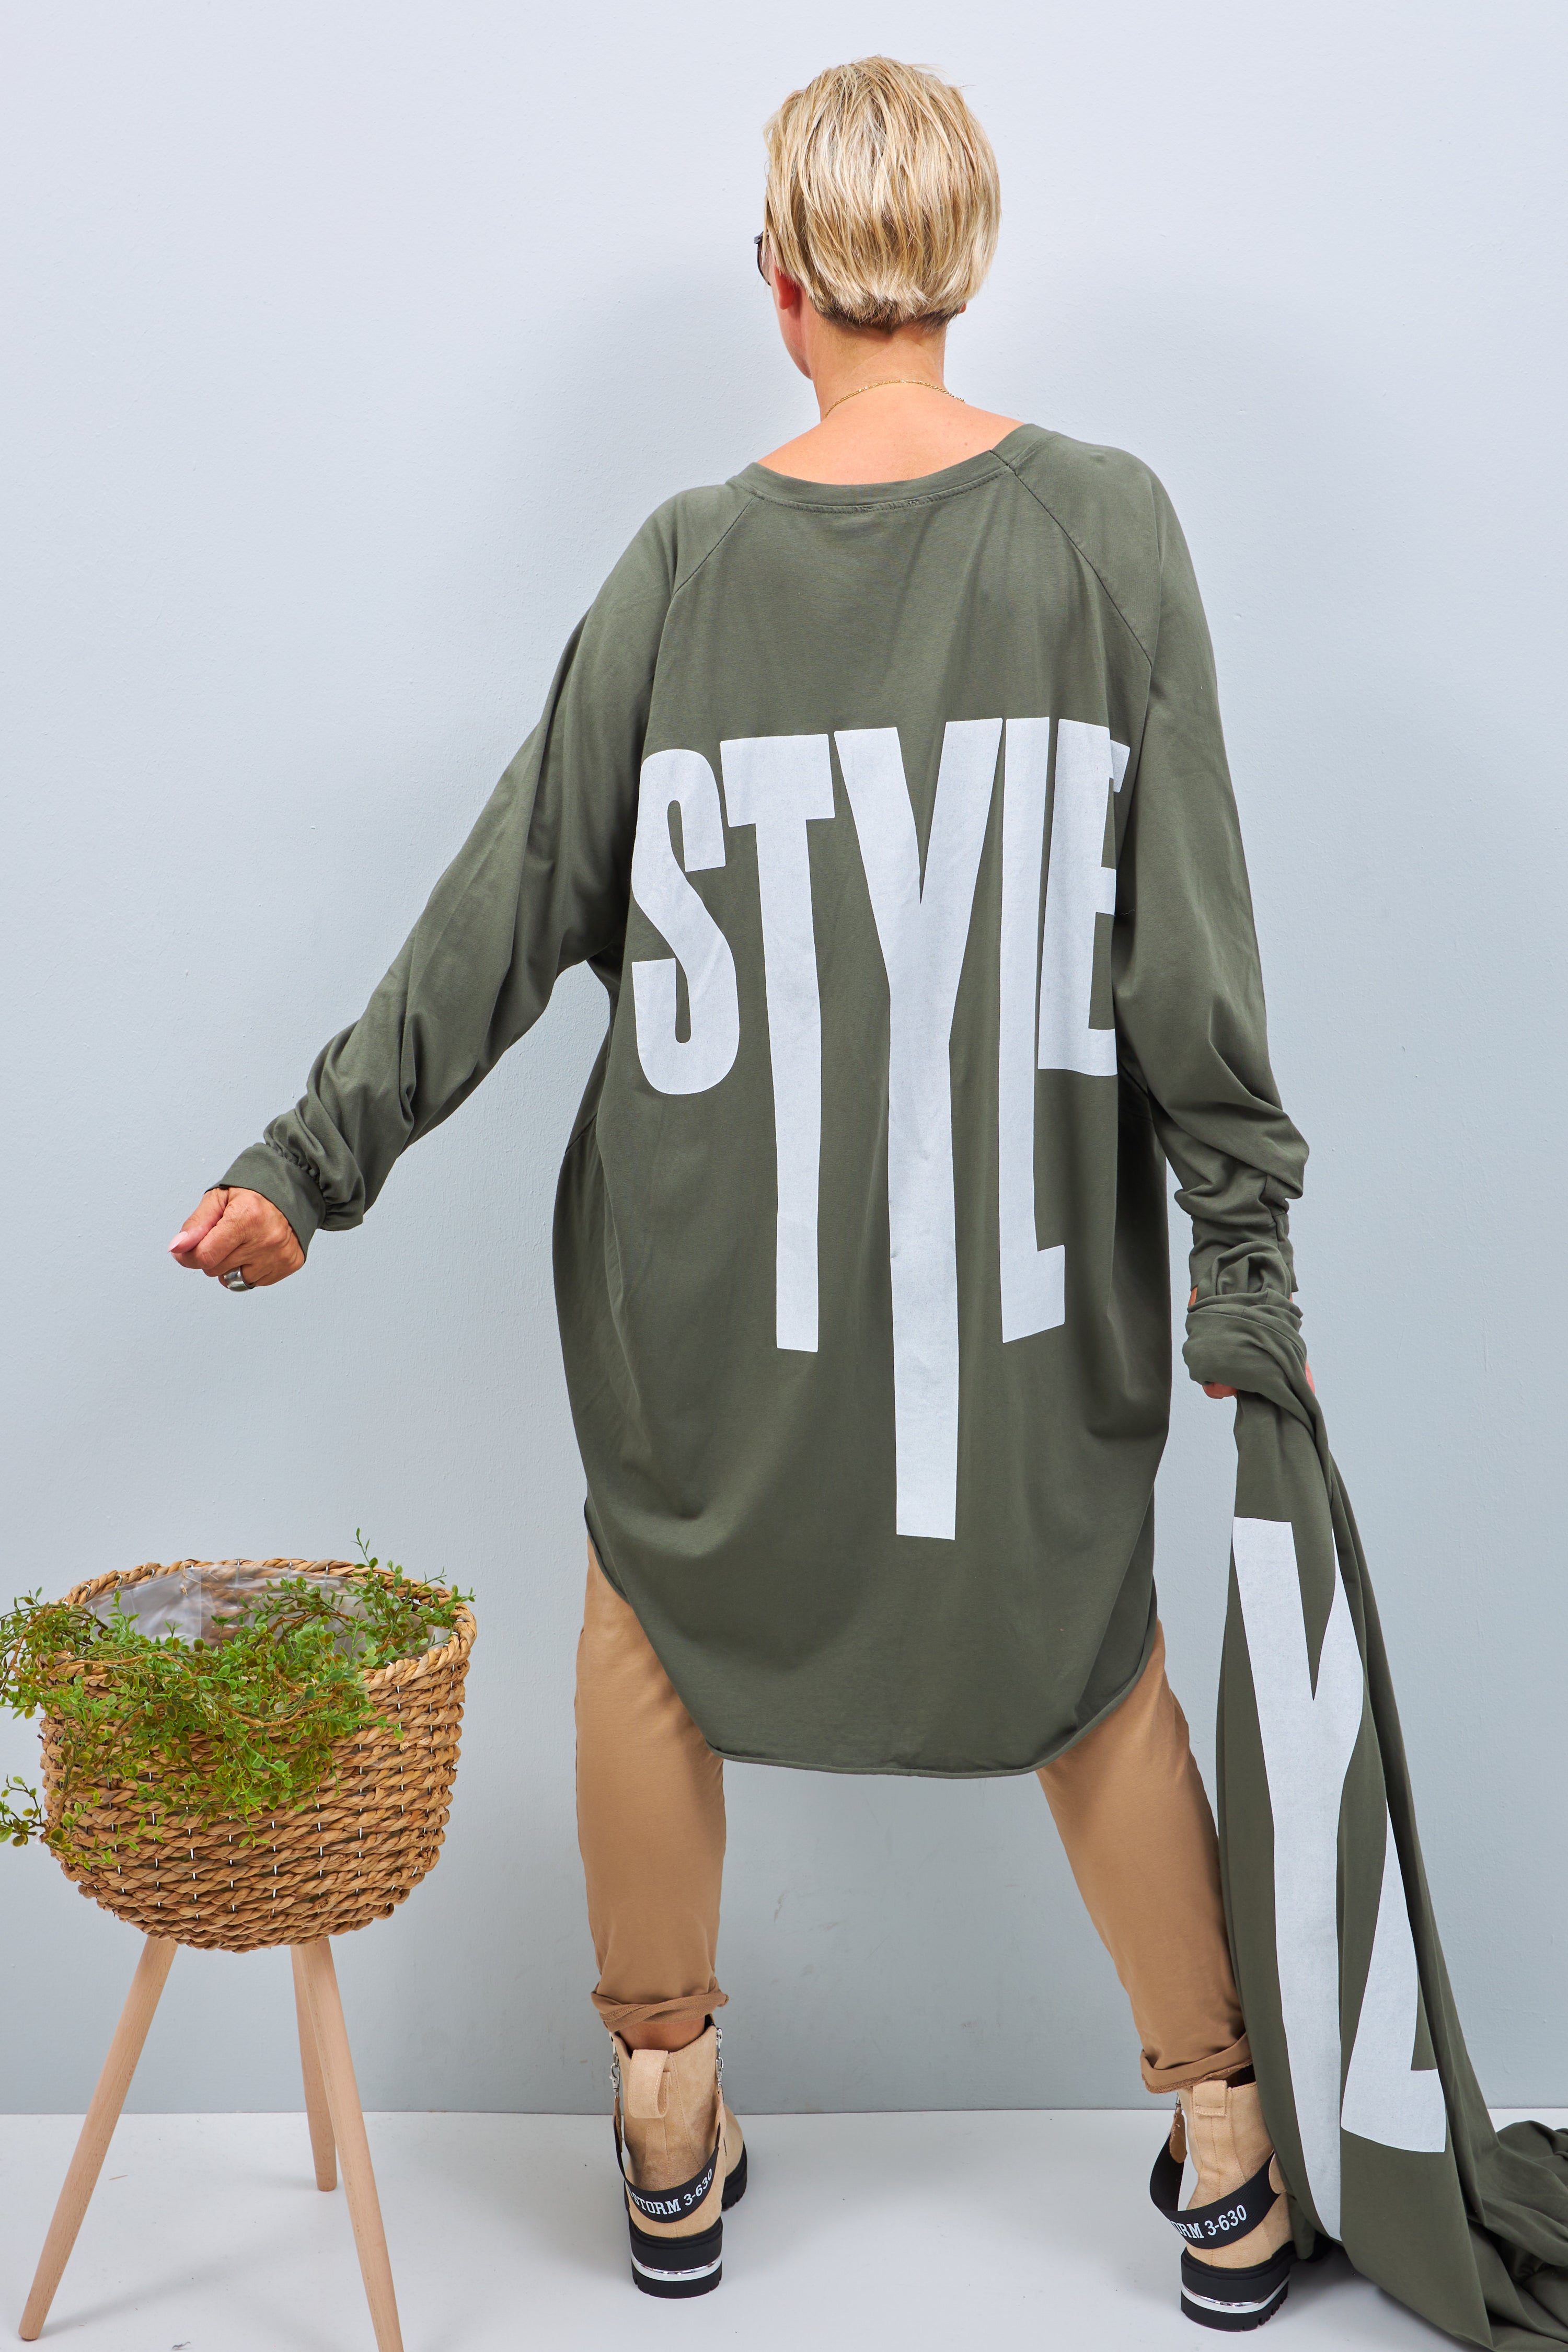 Oversized long shirt with "Style" print, khaki